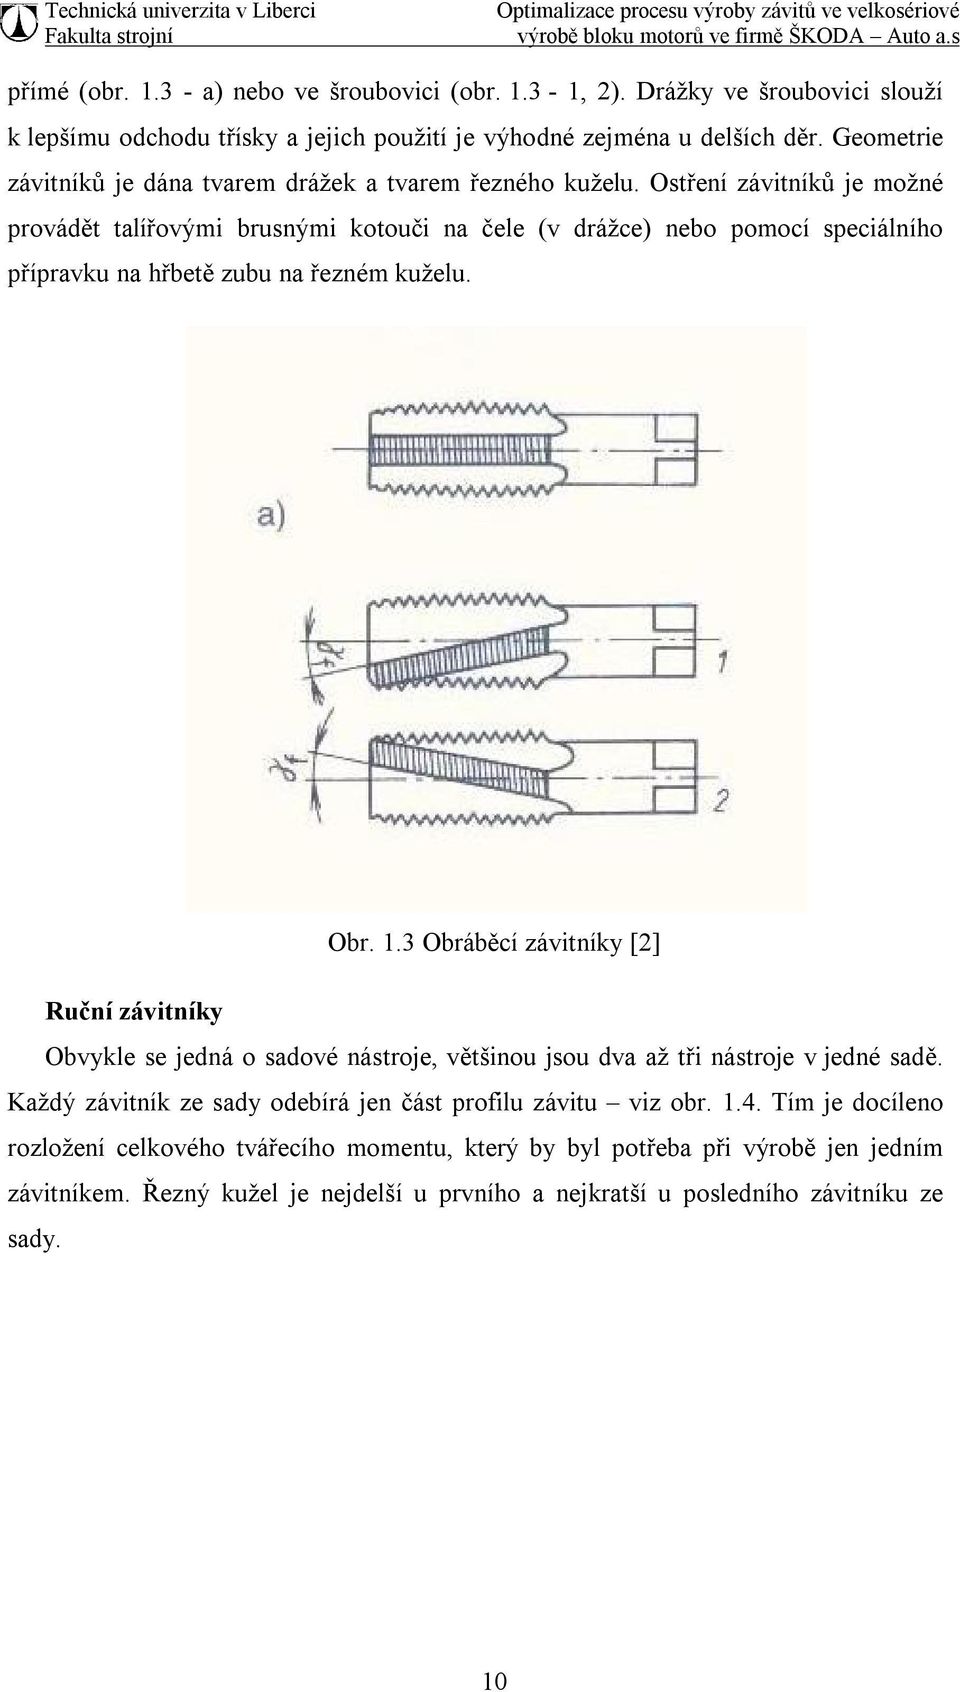 Ostření závitníků je možné provádět talířovými brusnými kotouči na čele (v drážce) nebo pomocí speciálního přípravku na hřbetě zubu na řezném kuželu. Obr. 1.